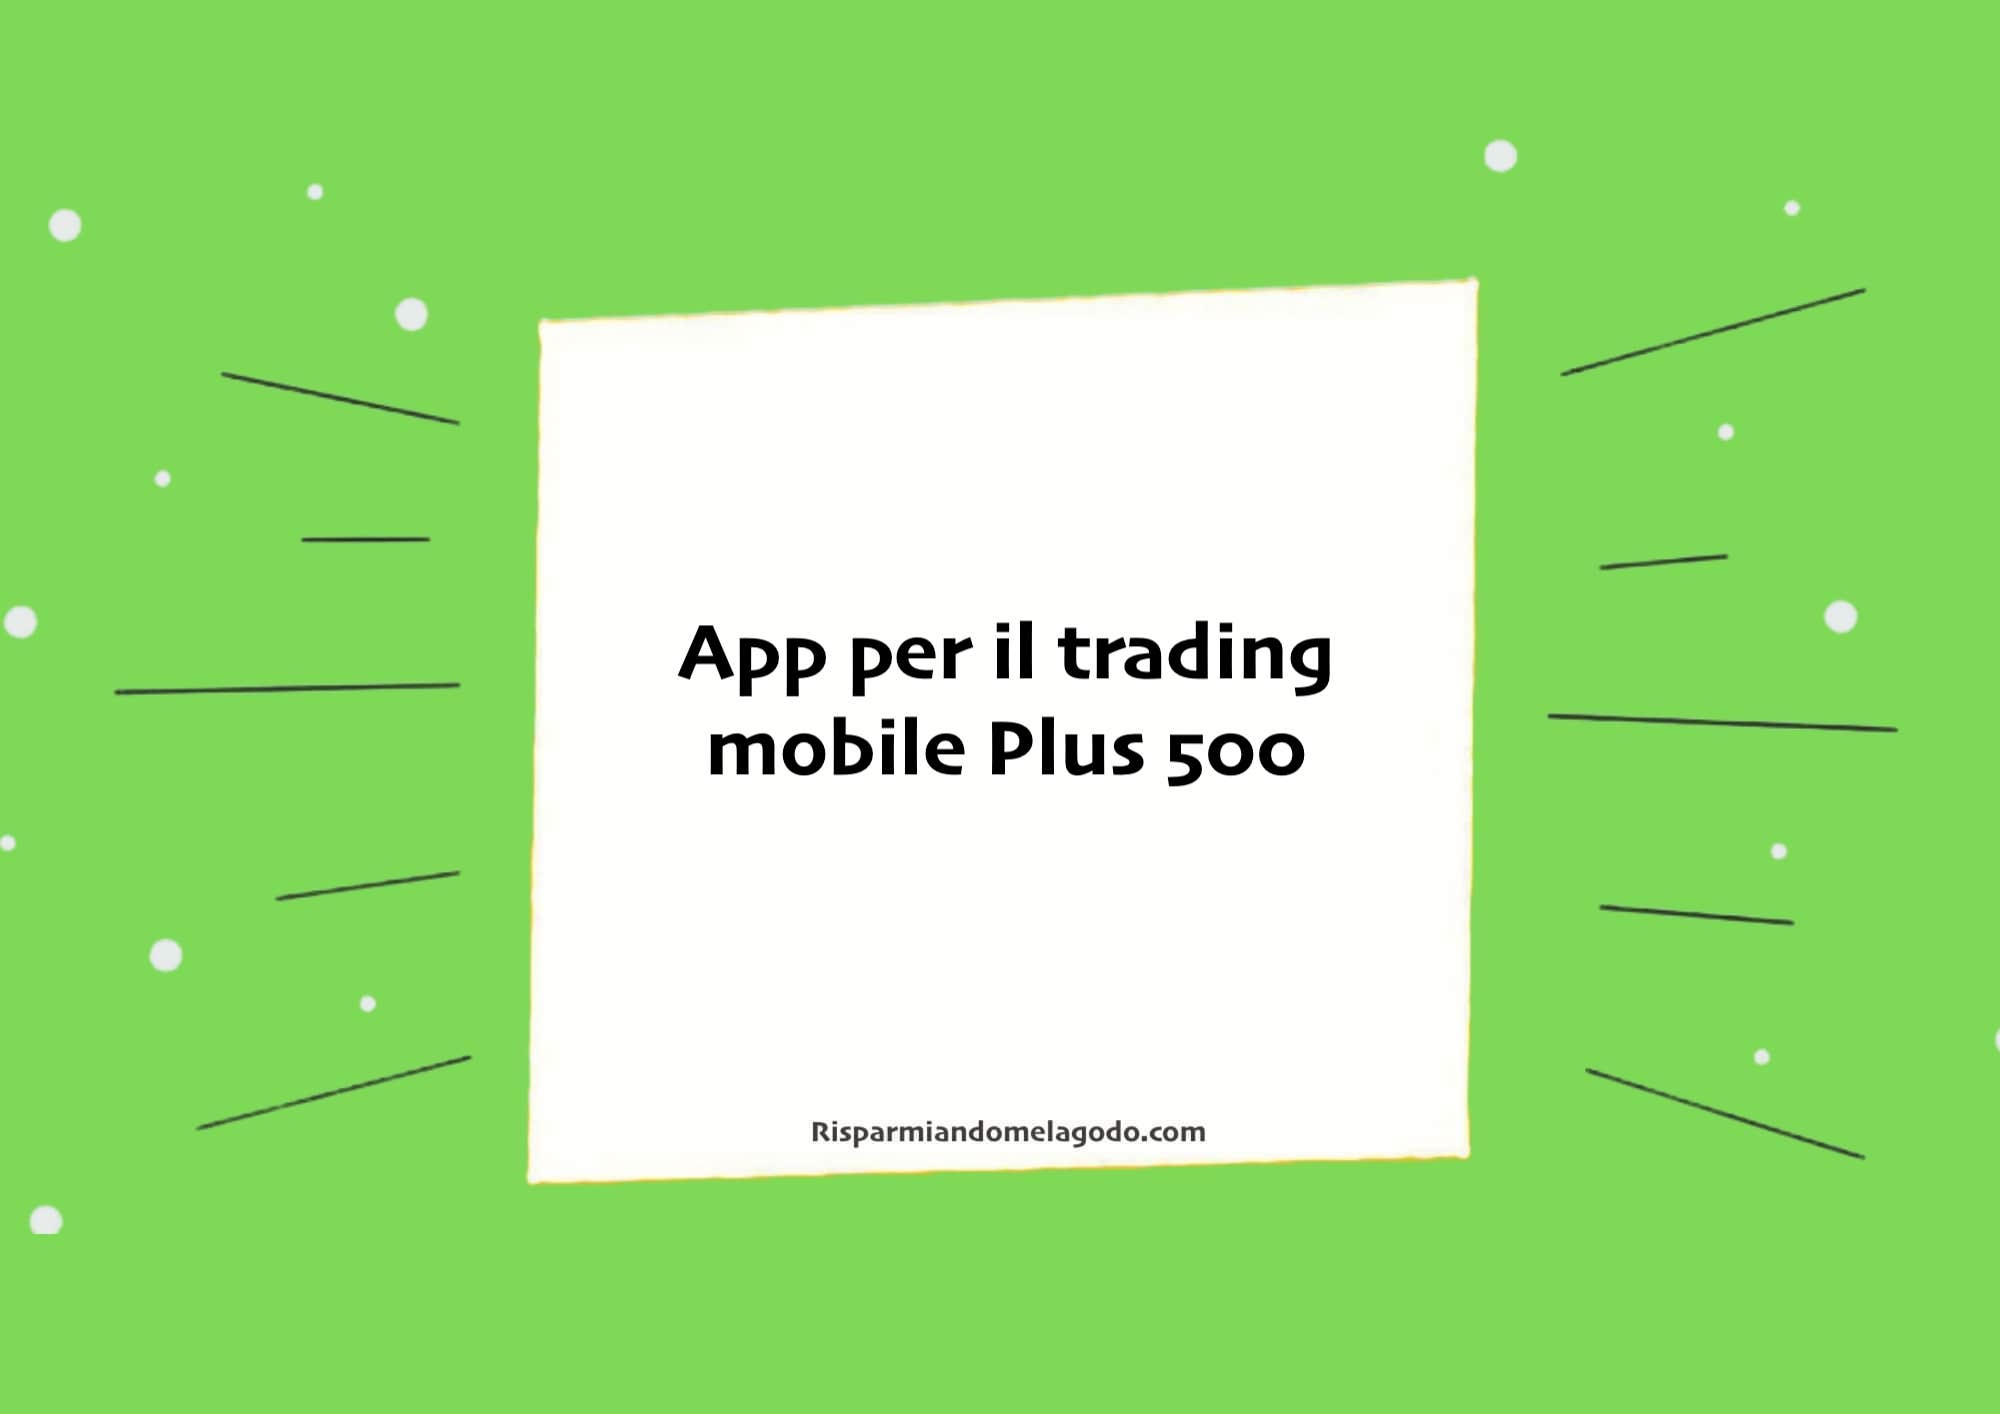 App per il trading mobile Plus 500